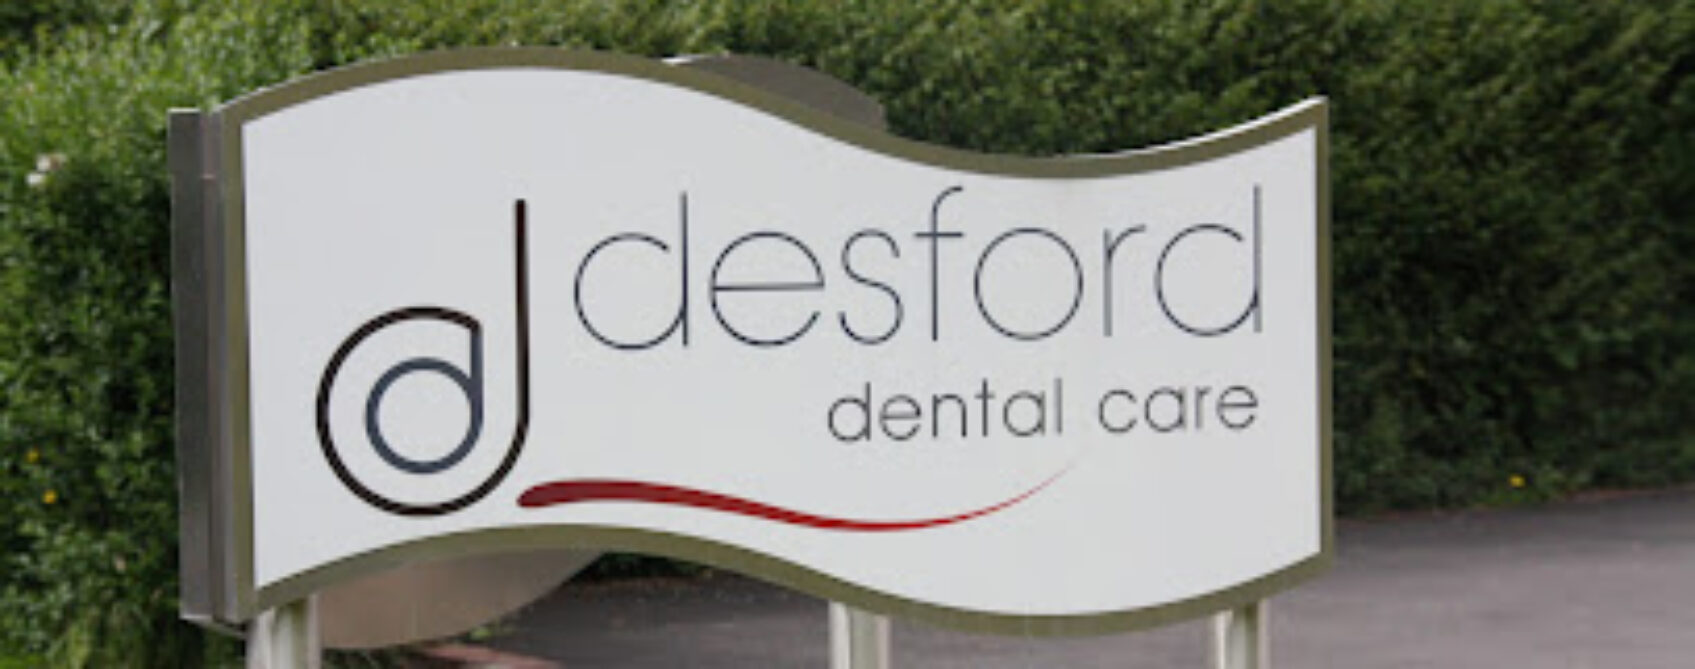  Desford Dental Care